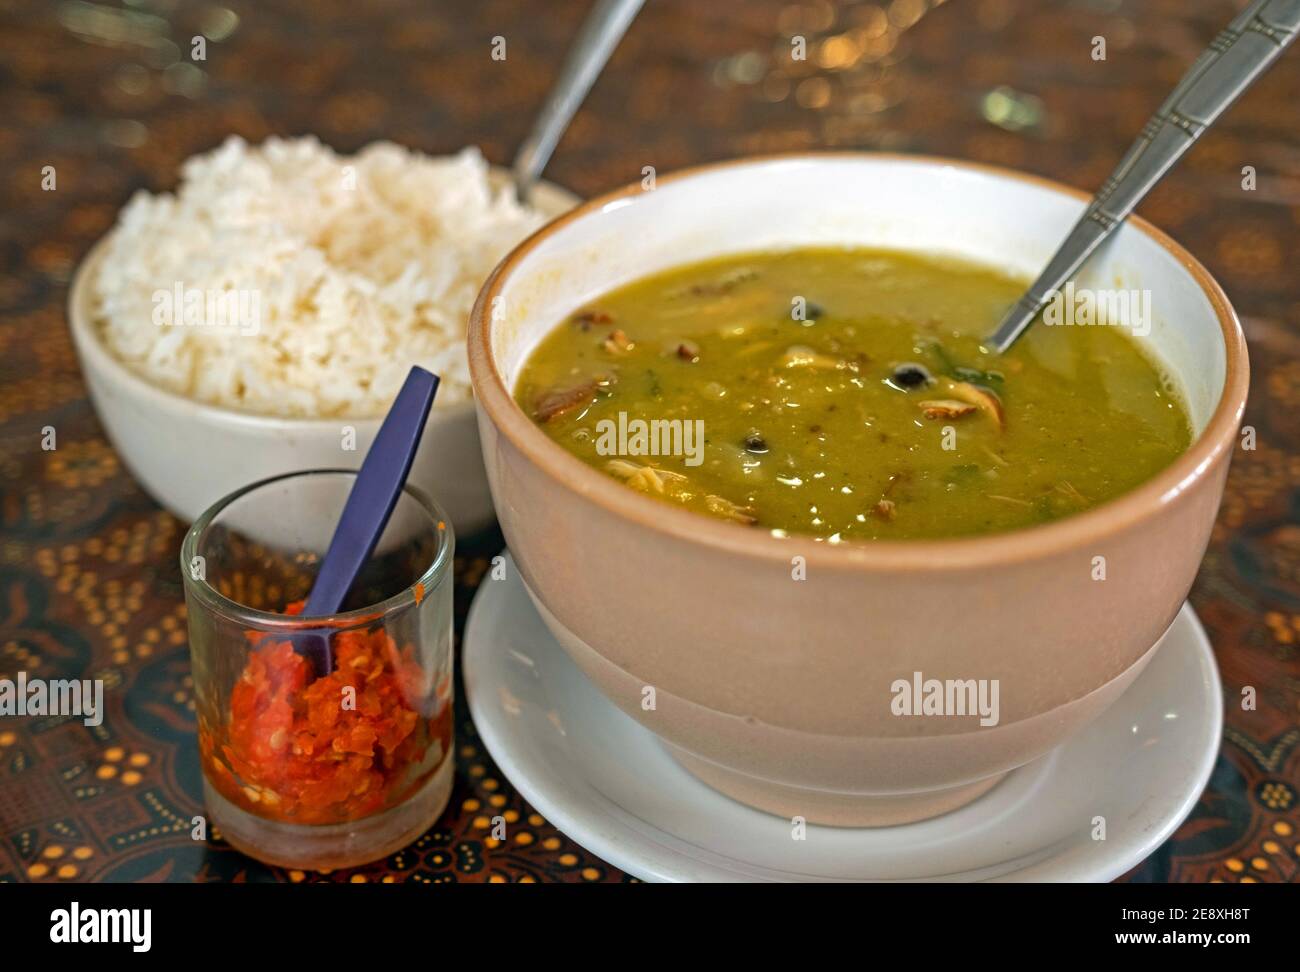 Erwtensoep / grüne Erbsensuppe, ein typisch holländisches Gericht, serviert mit Reis und Sambal in Surinam / Surinam Stockfoto